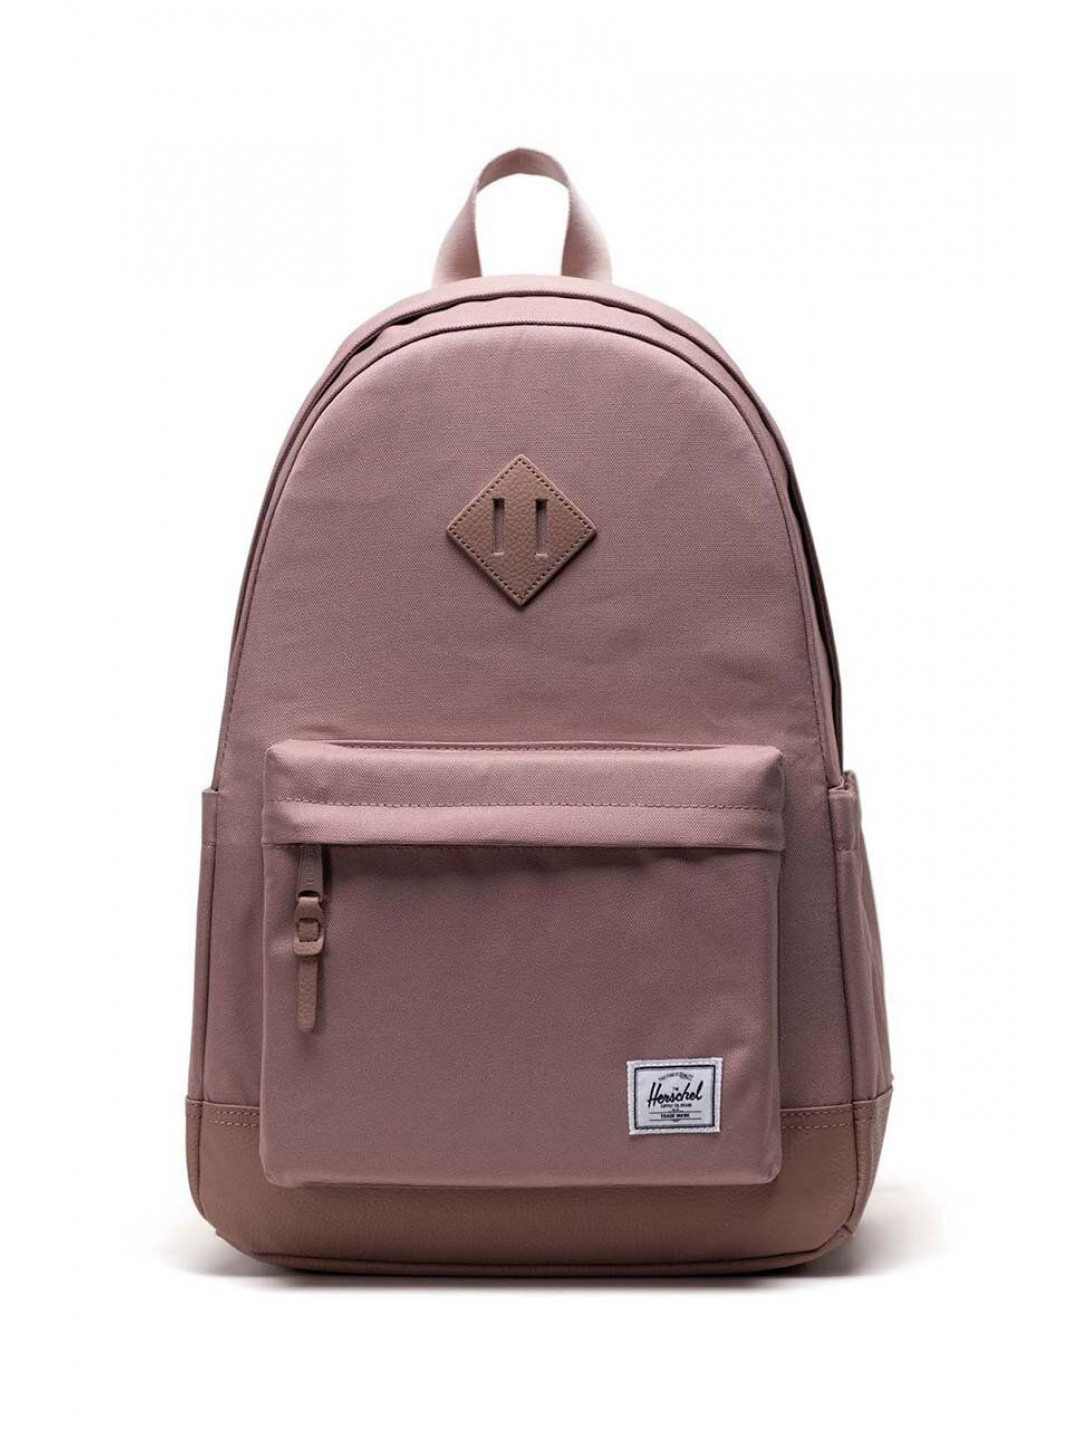 Batoh Herschel Heritage Backpack růžová barva velký hladký